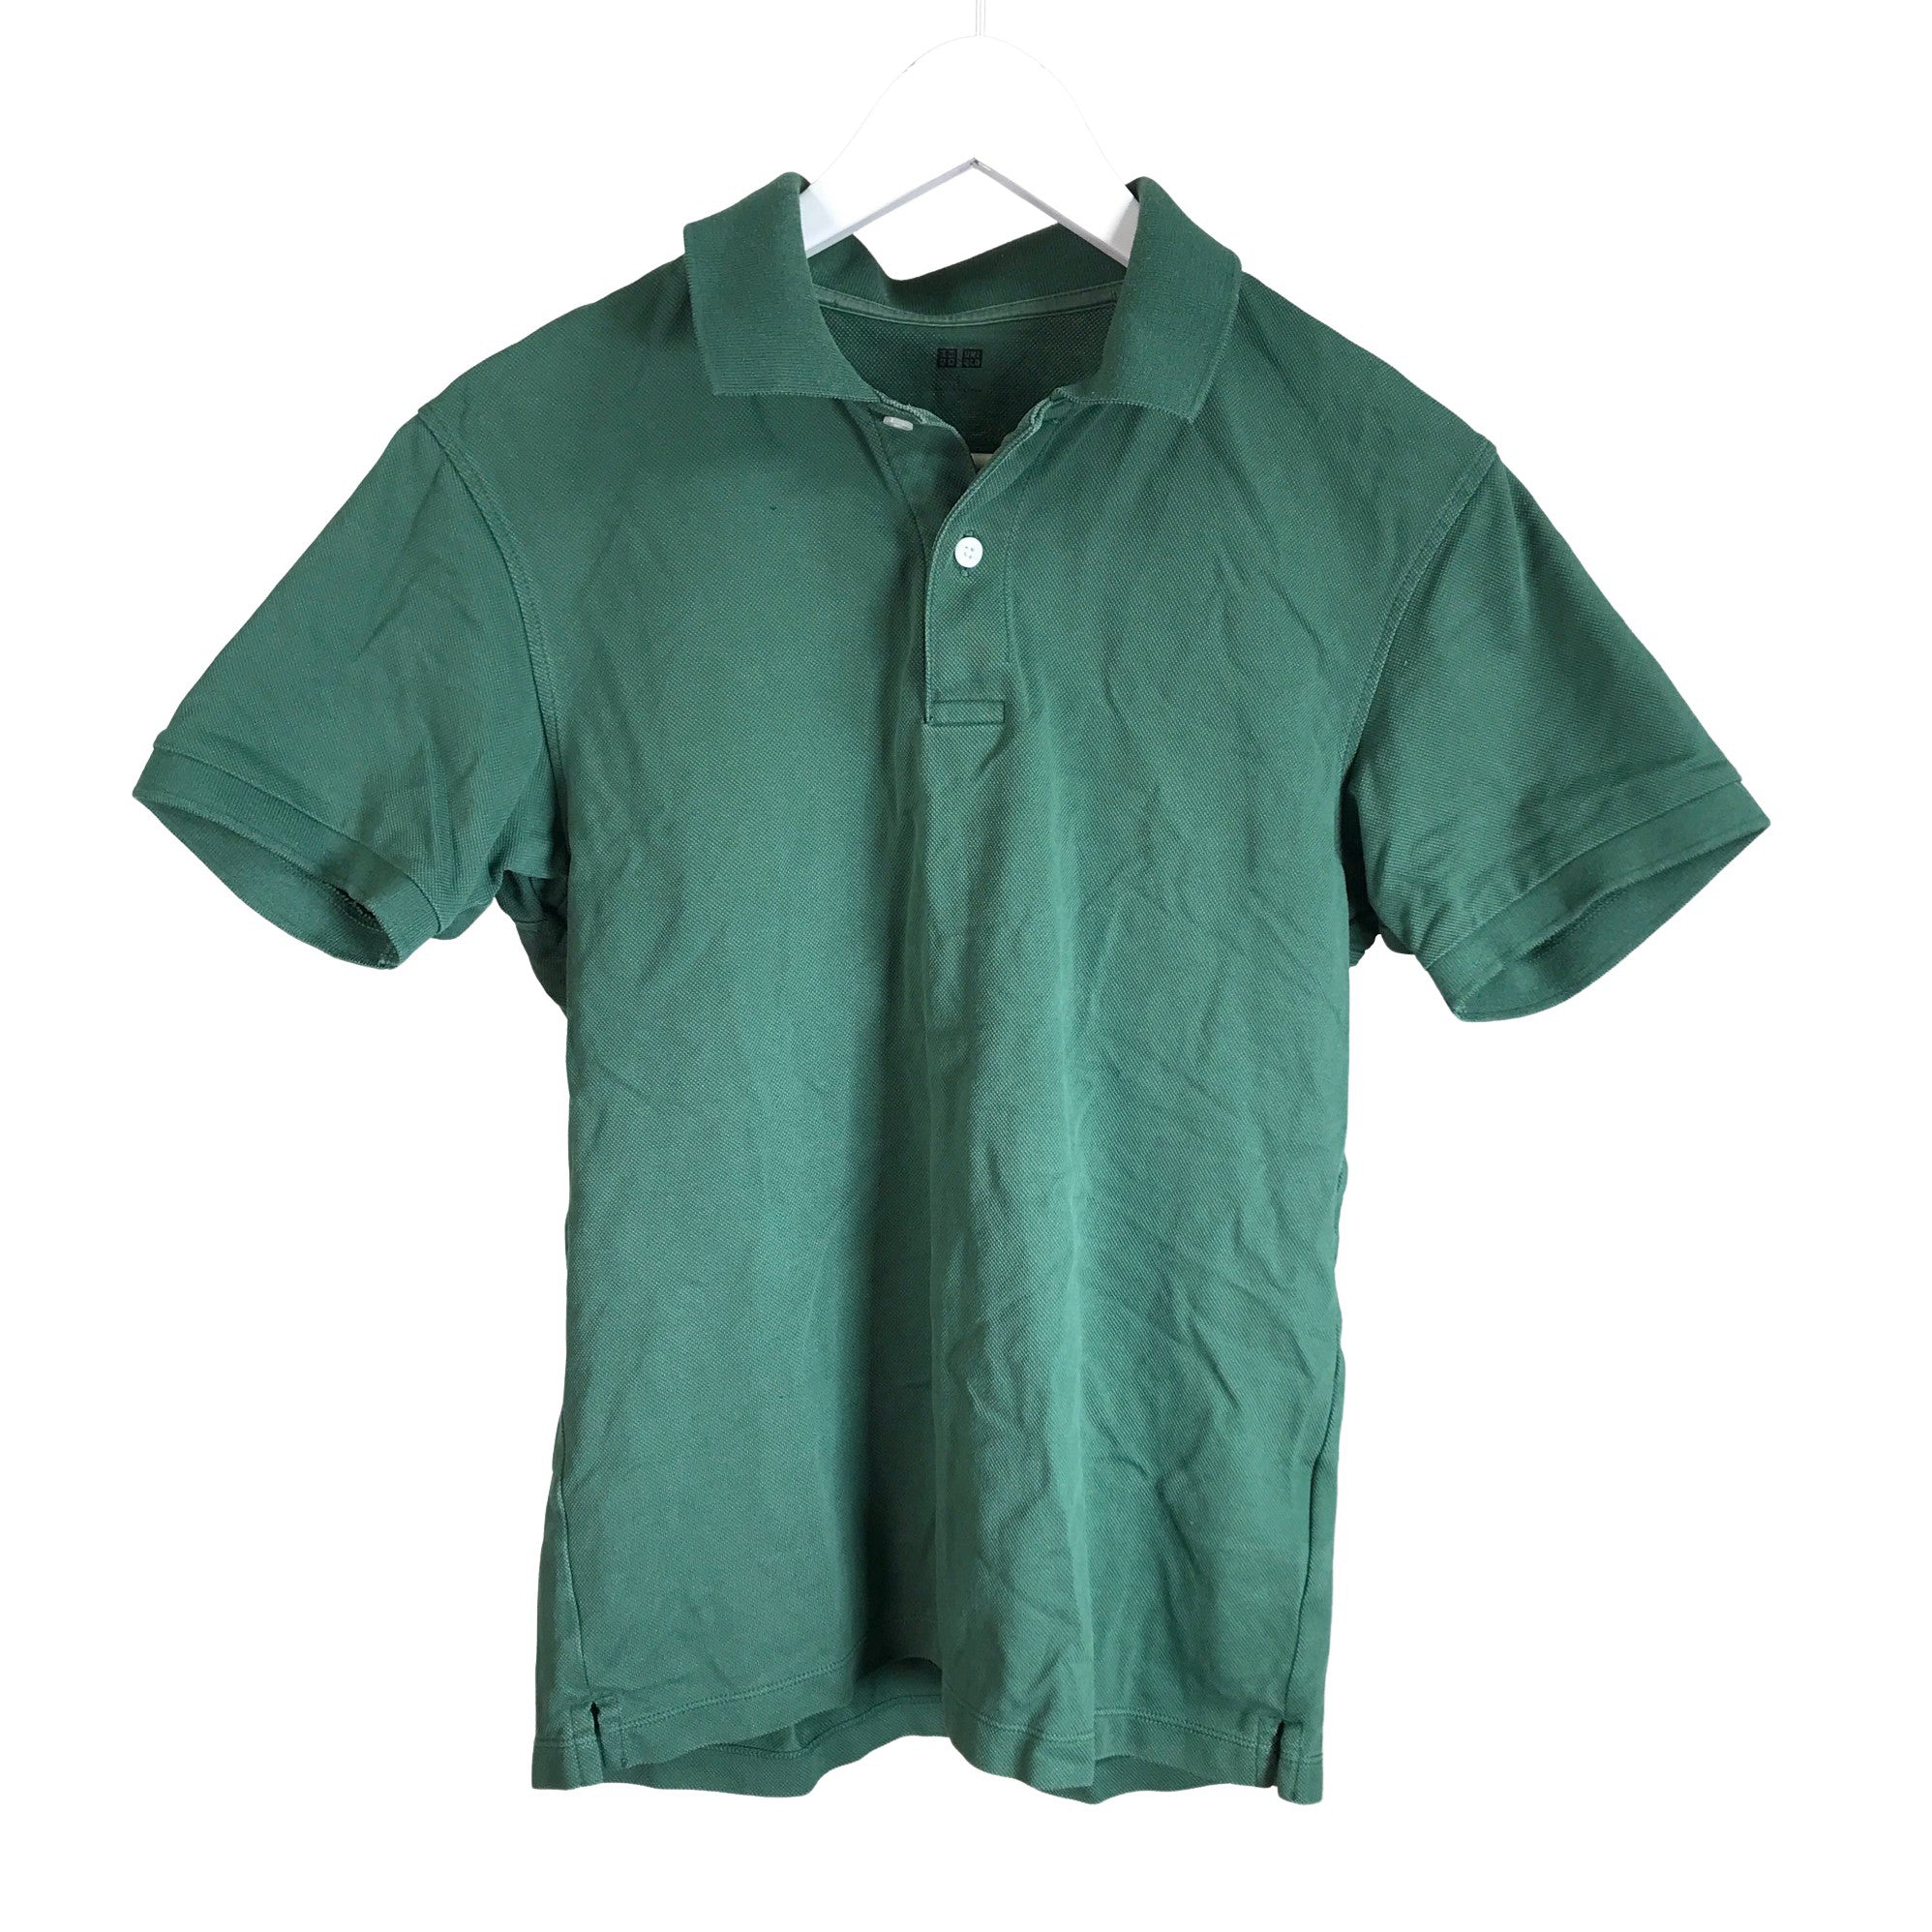 Uniqlo Mens Polo Shirt Green Mens Fashion Tops  Sets Tshirts  Polo  Shirts on Carousell